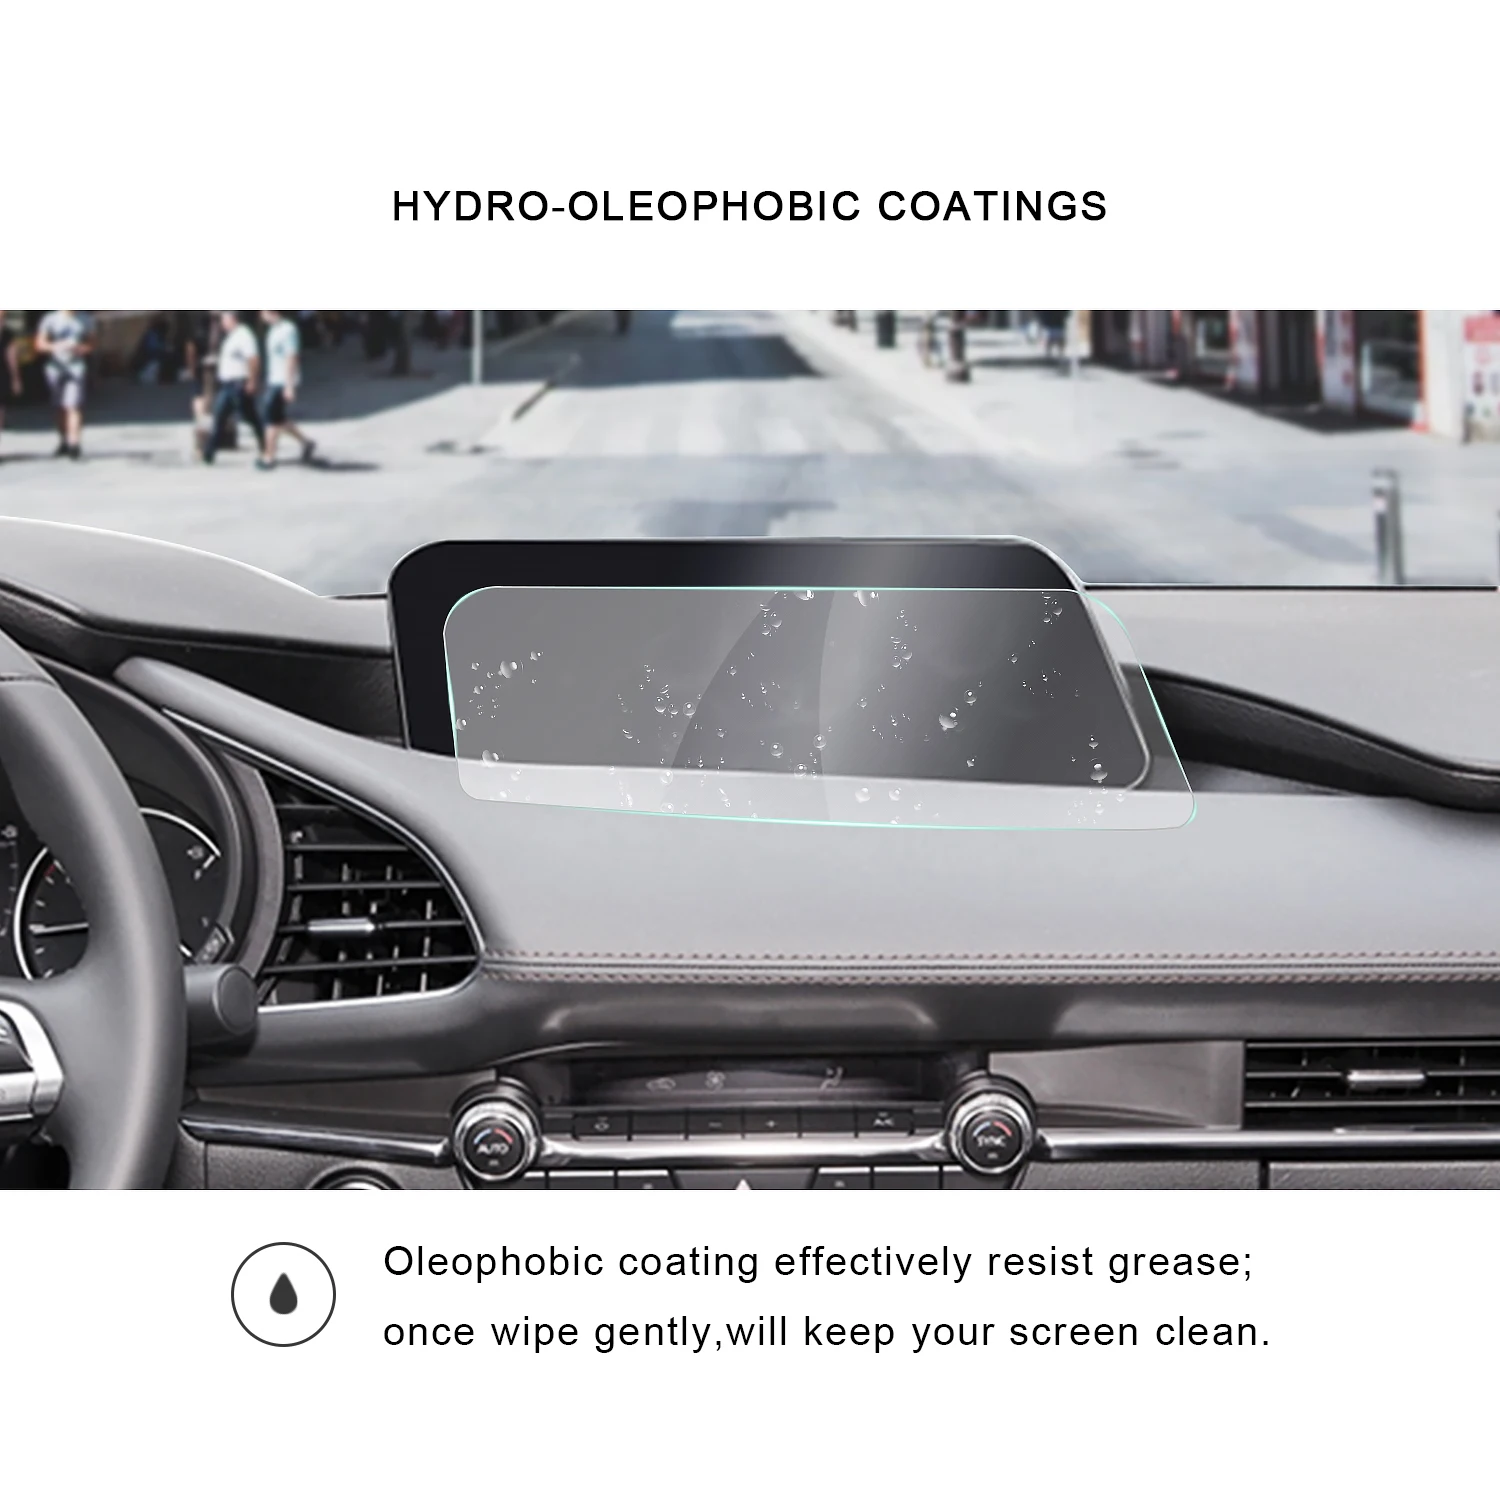 RUIYA экран протектор для Mazda 3 4th 8,8 дюймов автомобильный навигатор сенсорный экран дисплея центра, с уровнем твердости 9H Защитная пленка для экрана из закаленного стекла защитная пленка